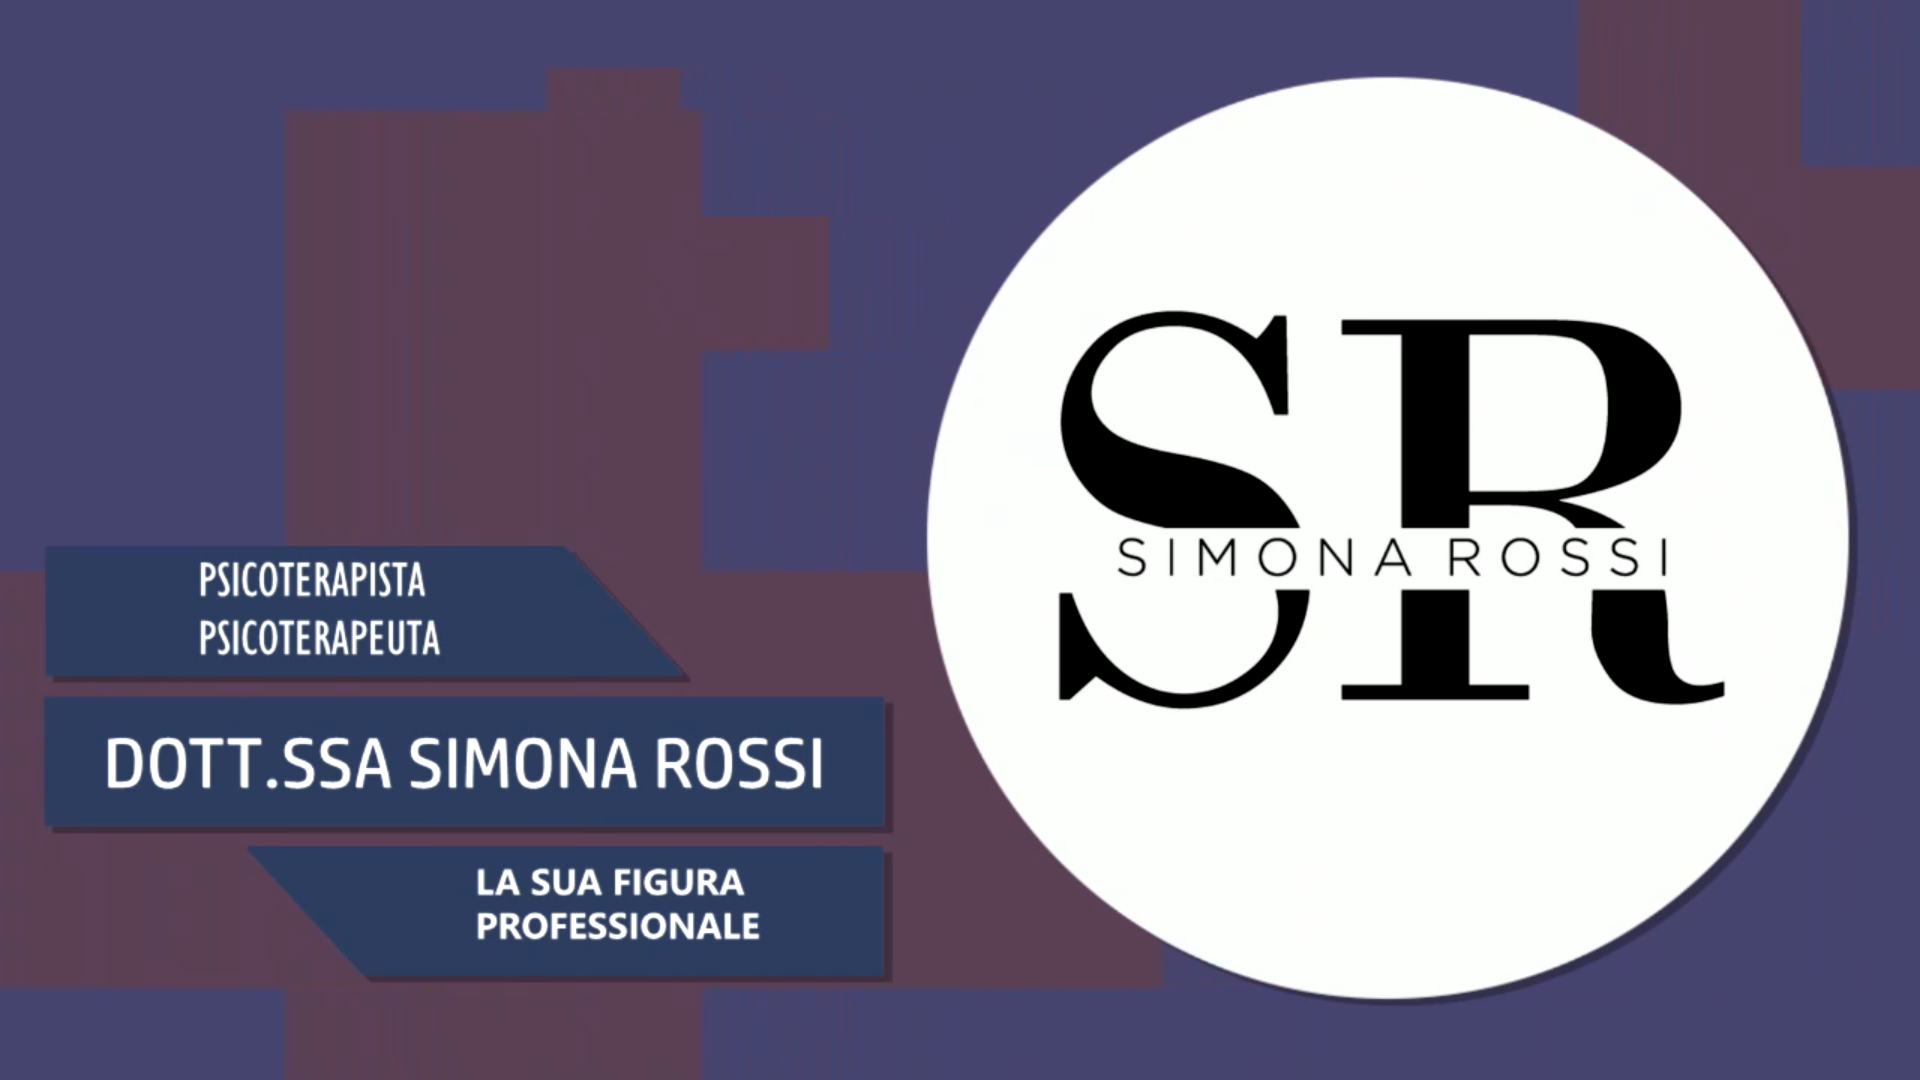 Intervista alla Dott.ssa Simona Rossi – La sua figura professionale